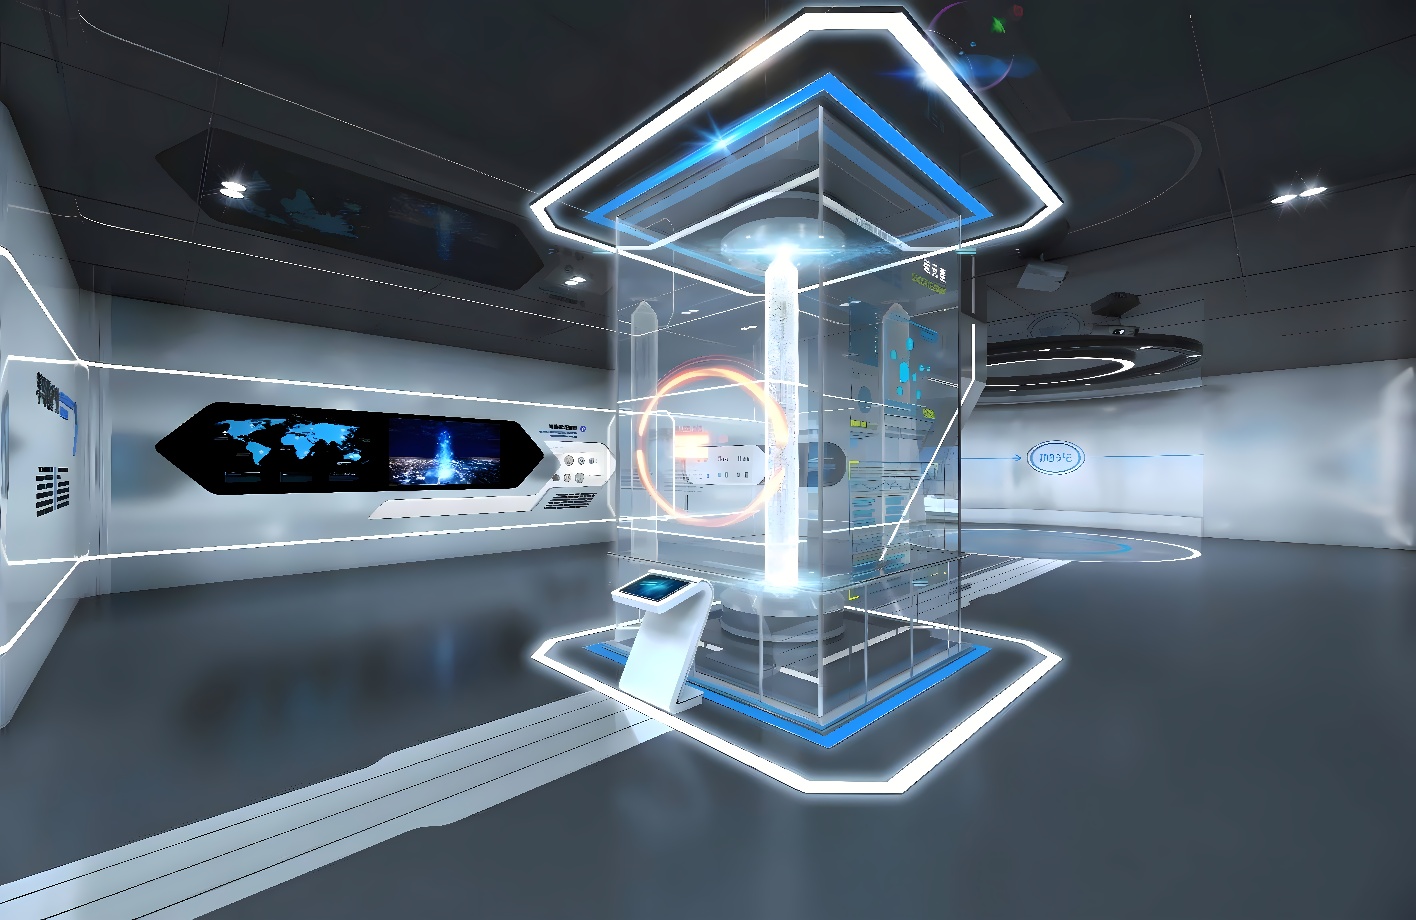 这是一张展示现代科技感的虚拟现实室内设计图，有透明显示屏和未来风格的装饰，整体色调以蓝白为主，显得十分先进。